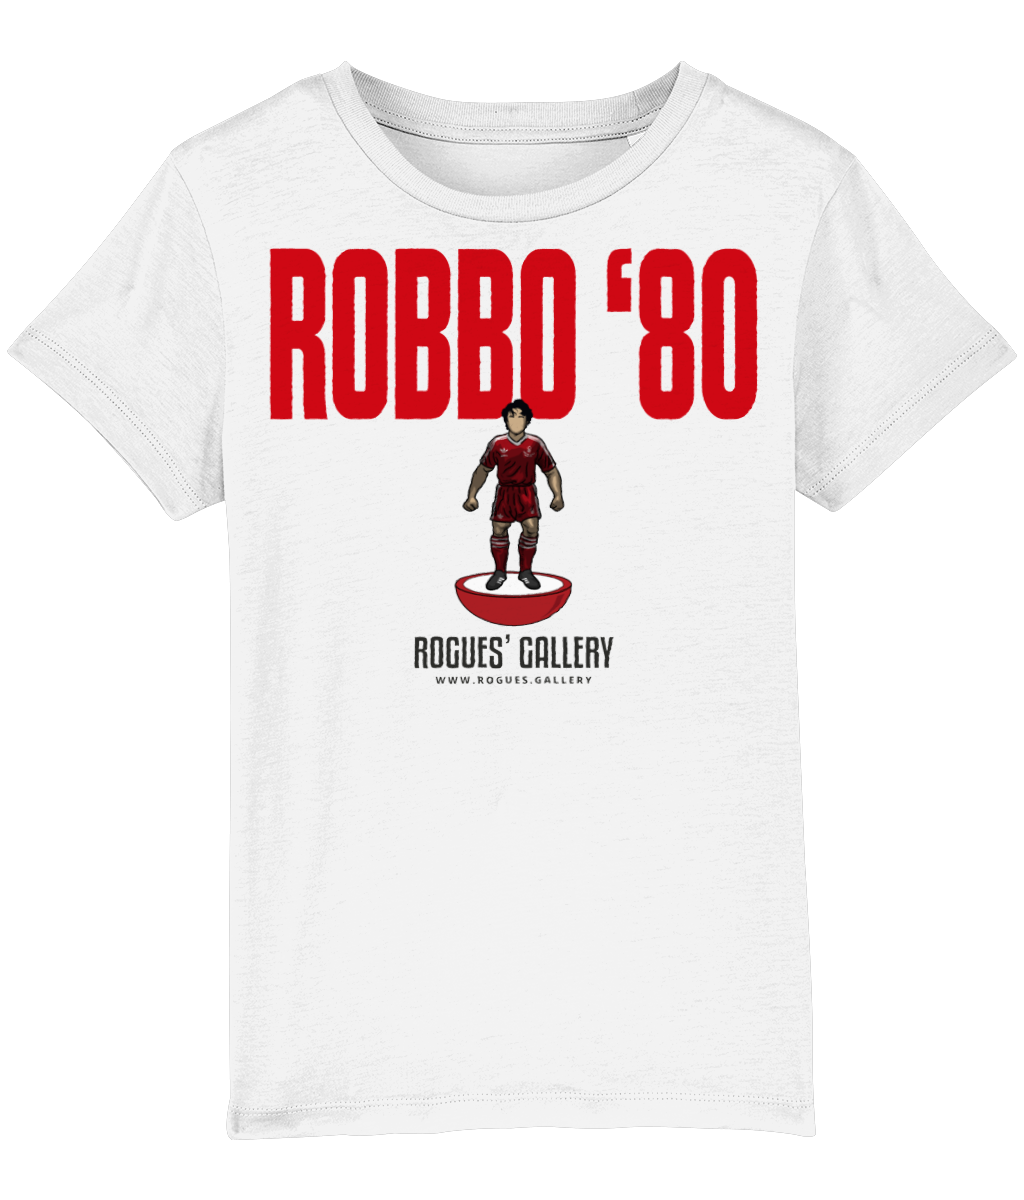 Robbo 80 Deluxe Kid's T-Shirt